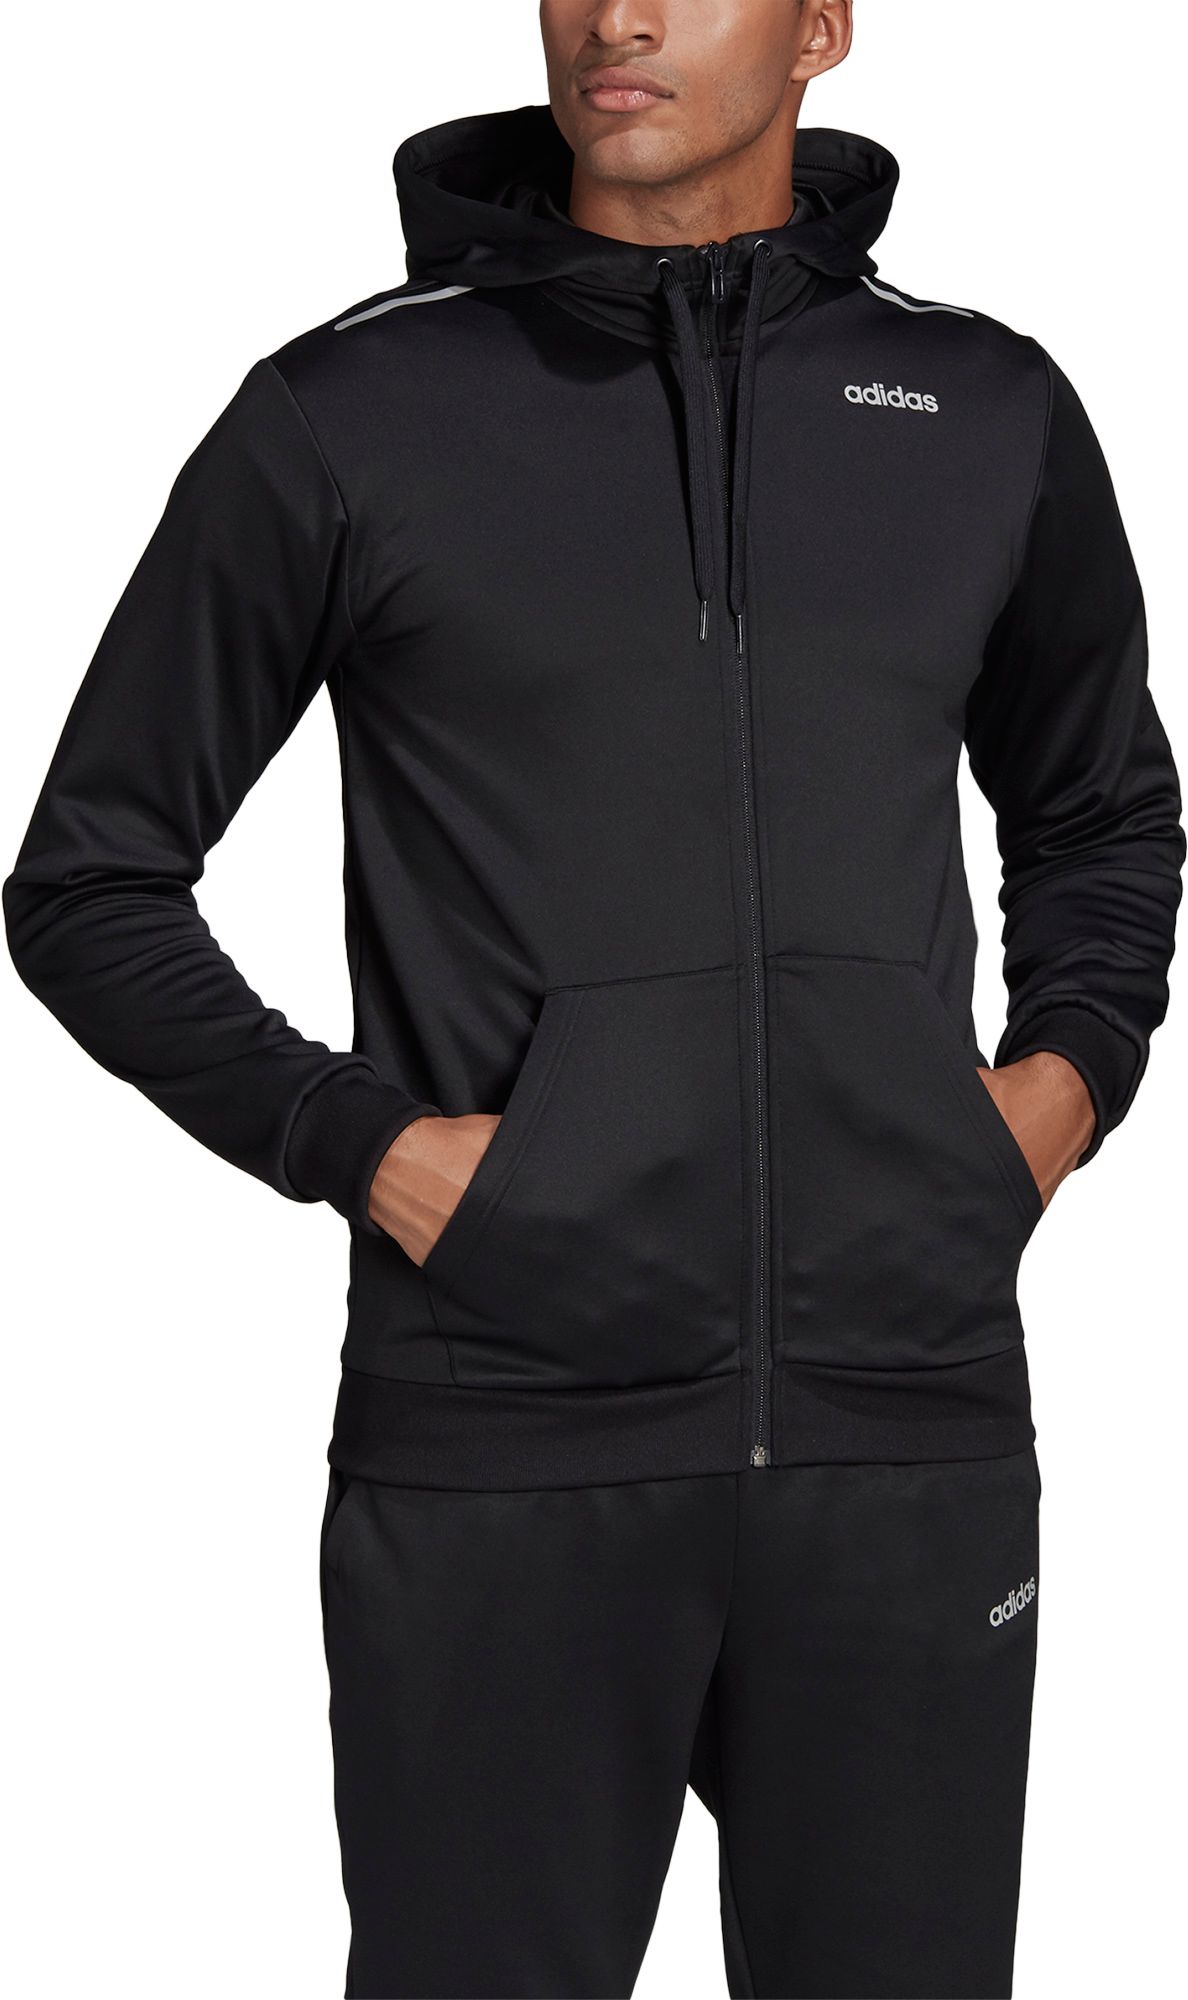 adidas zipper hoodie mens